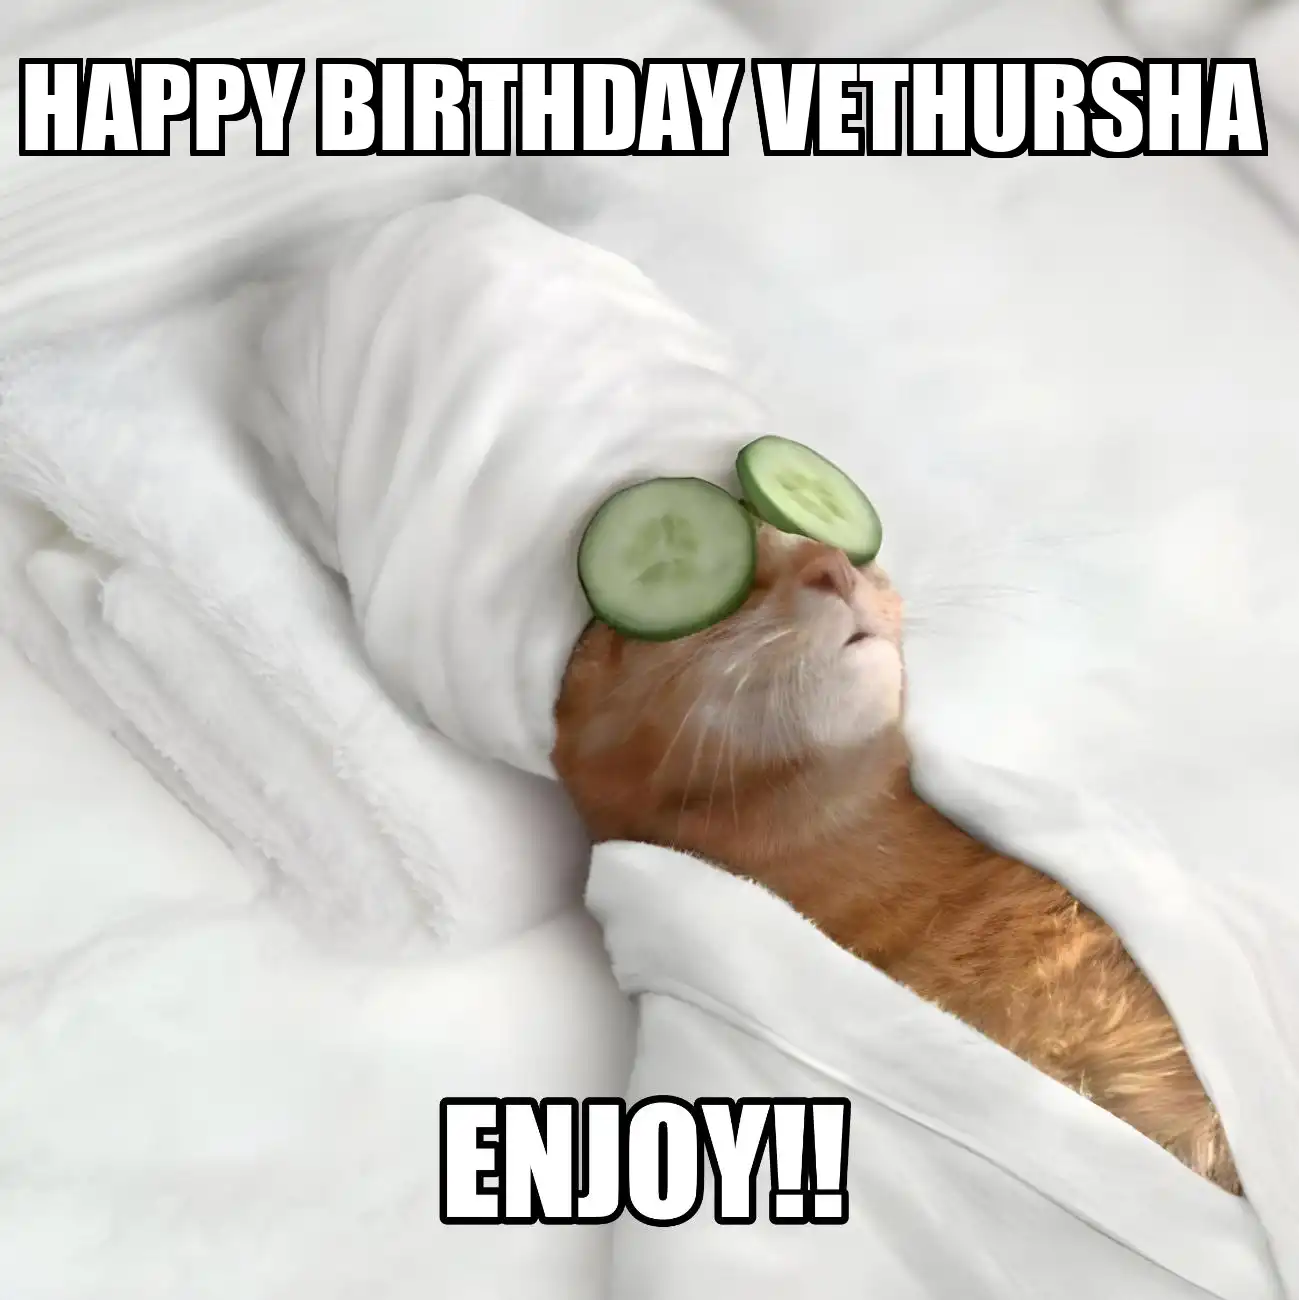 Happy Birthday Vethursha Enjoy Cat Meme